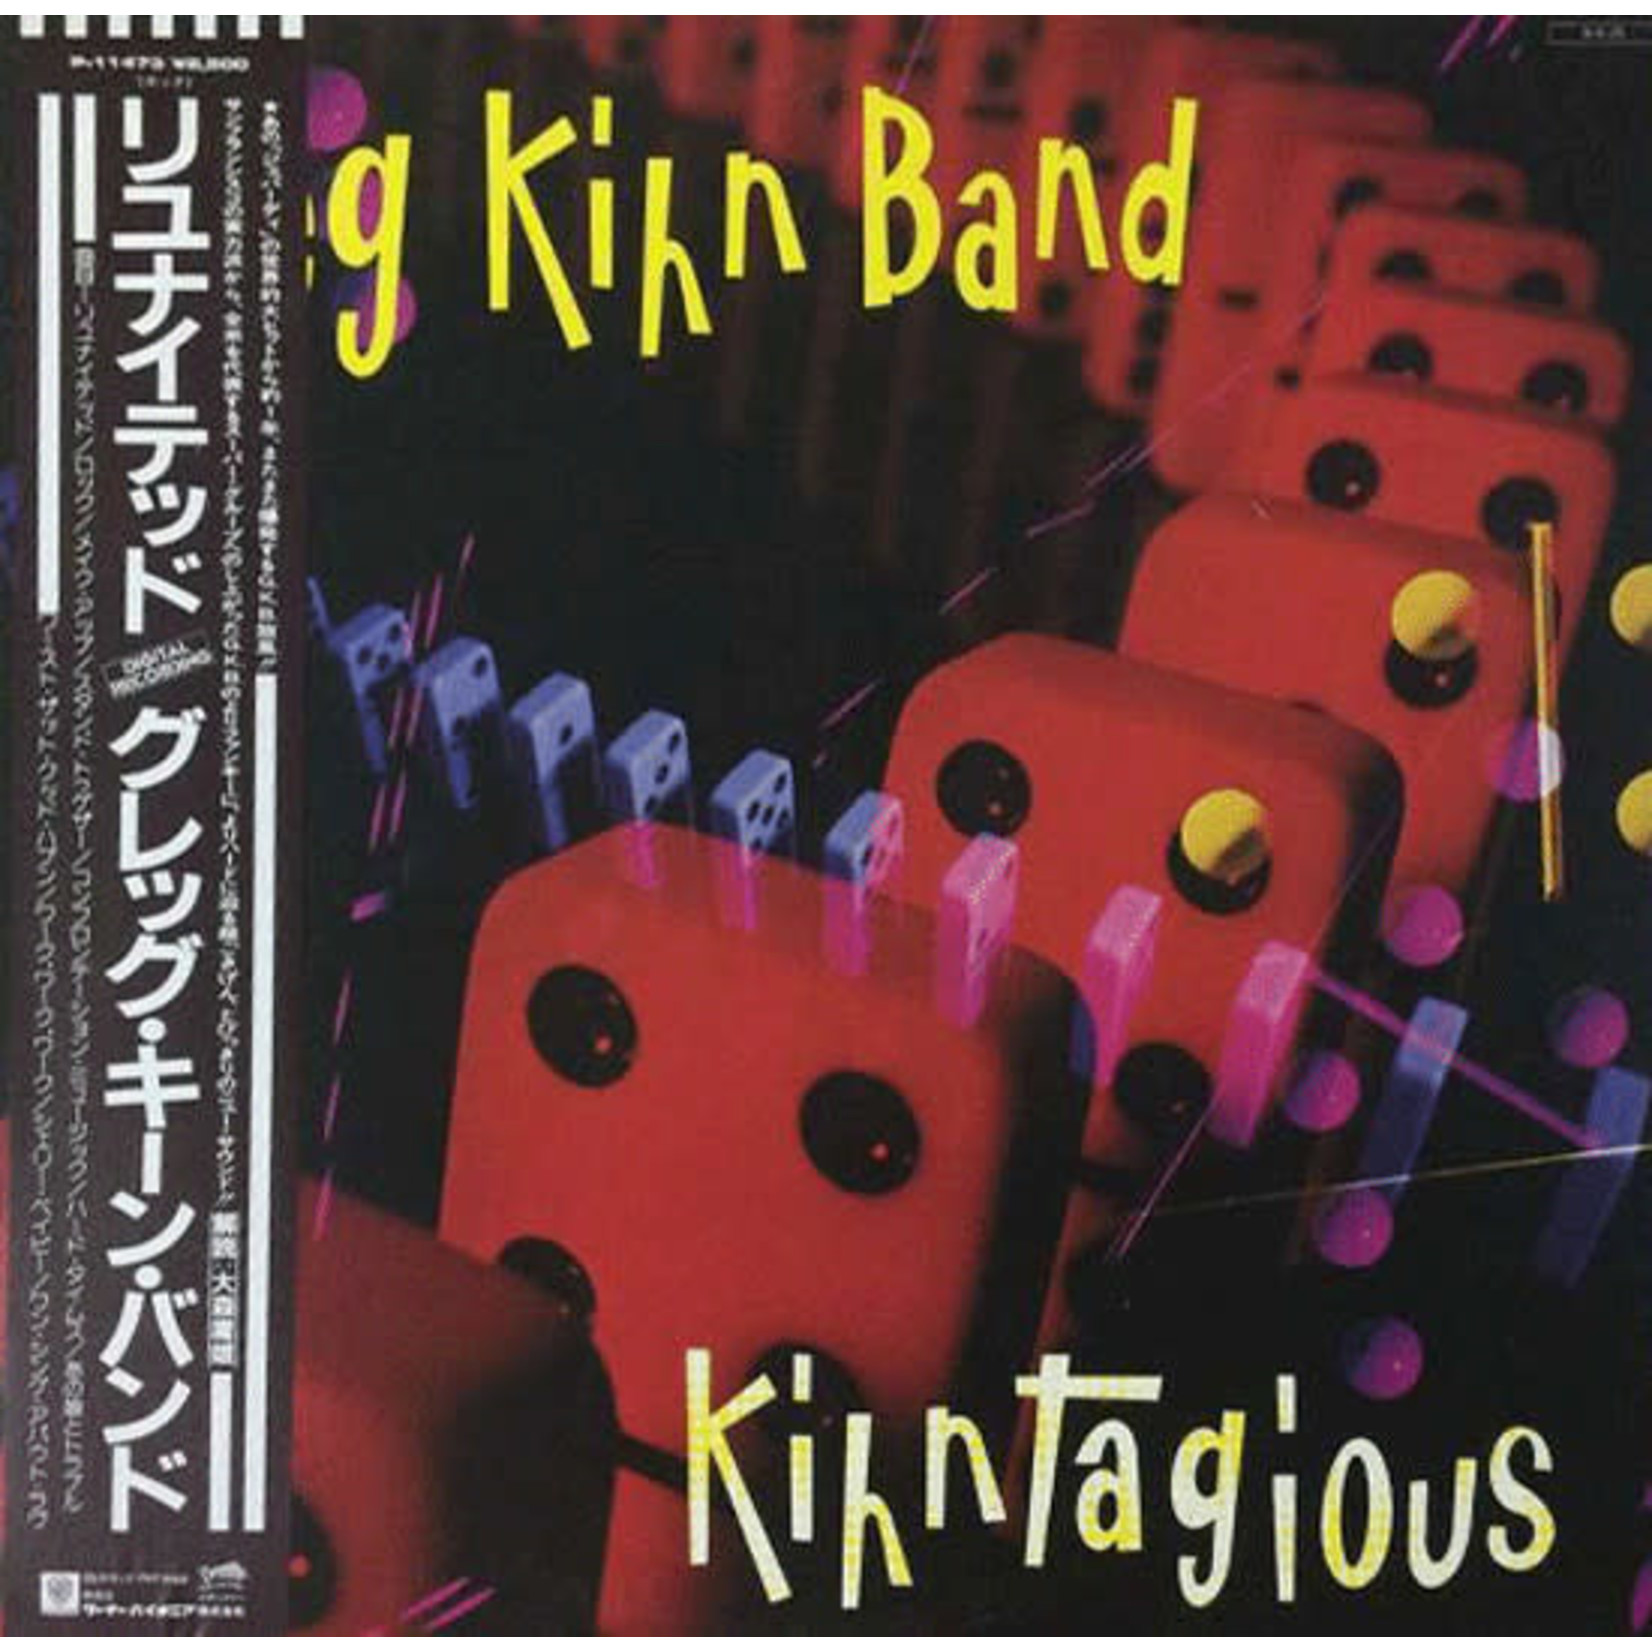 [Vintage] Greg Kihn - Kihntagious